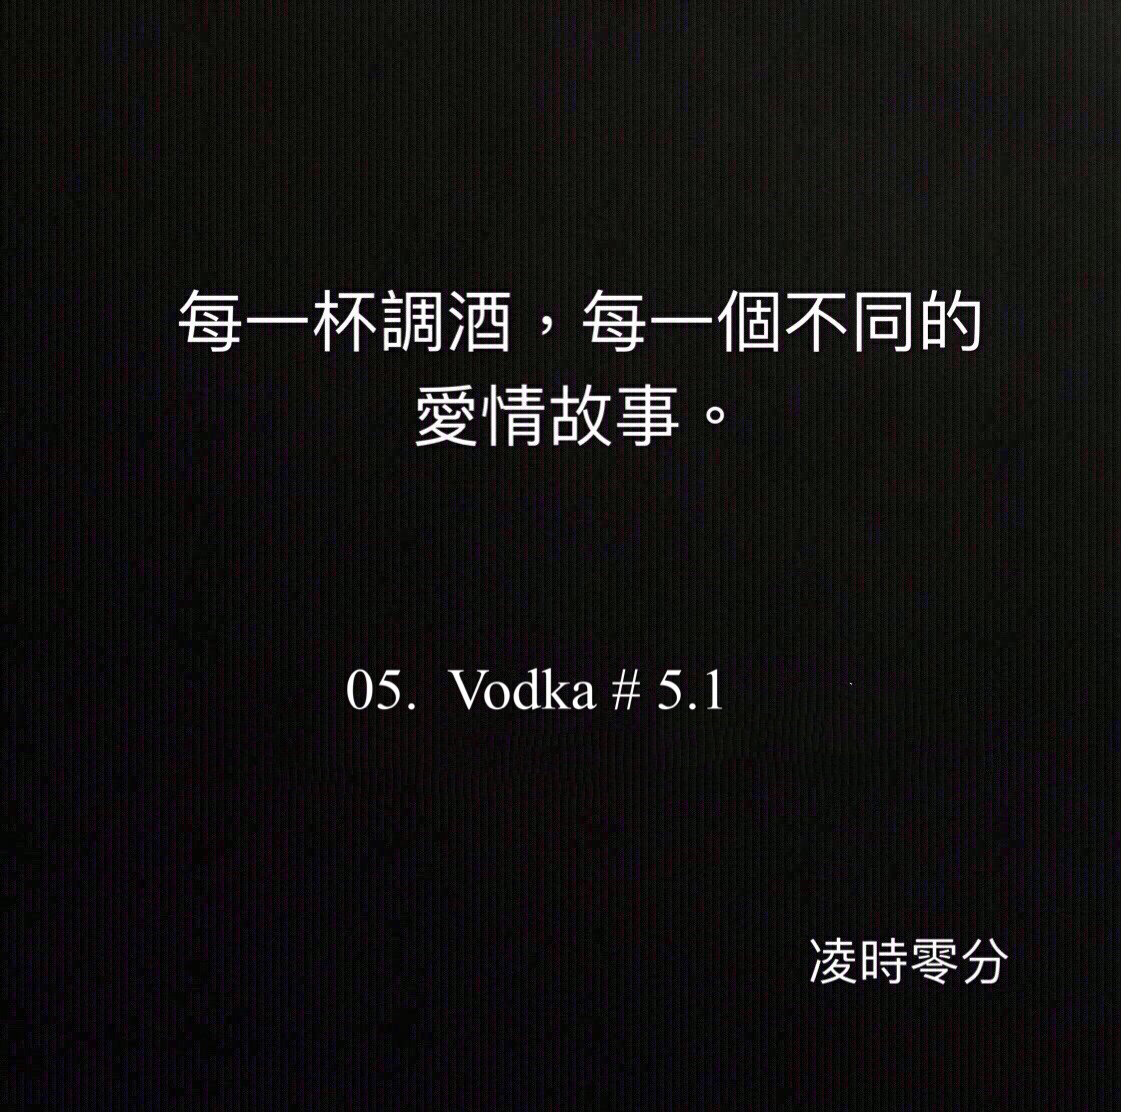 （短篇故事）每一杯調酒，每一個不同的愛情故事 05. Vodka #5.1